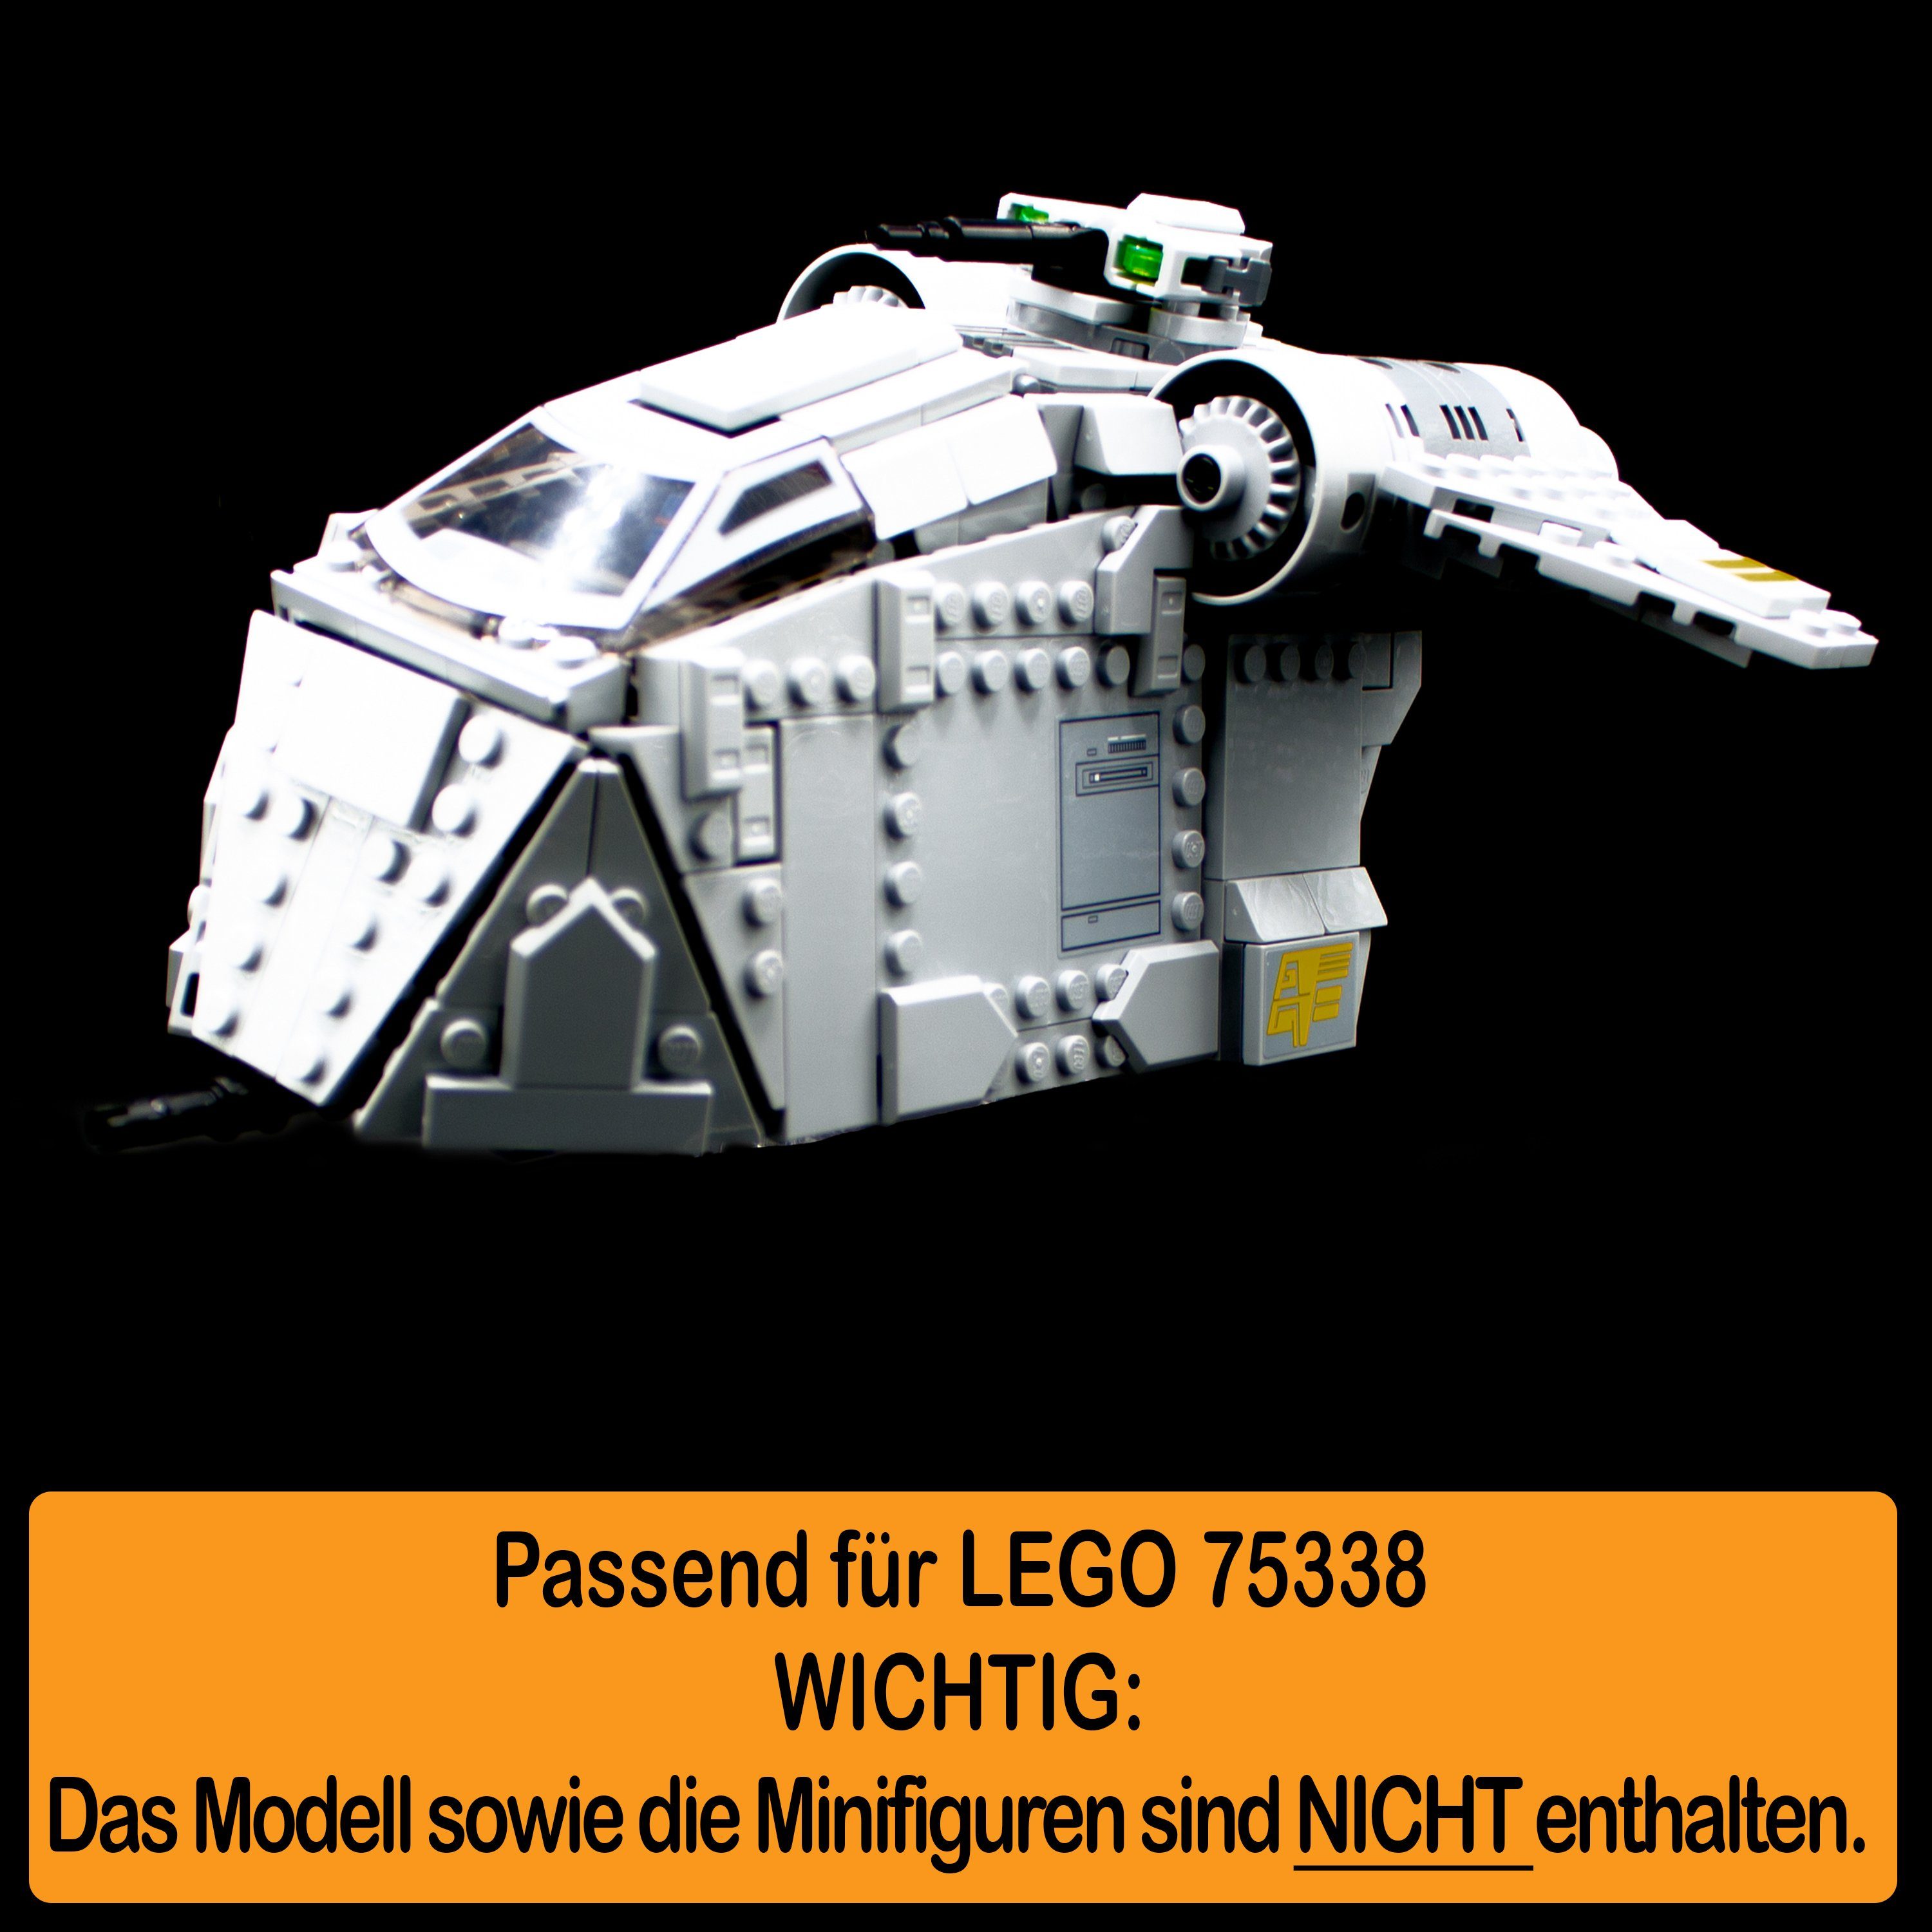 75338 Star Made Wars 100% Ambush einstellbar, Display selbst Stand und Germany für in Standfuß AREA17 on zum Positionen Winkel zusammenbauen), LEGO Acryl (verschiedene Ferrix